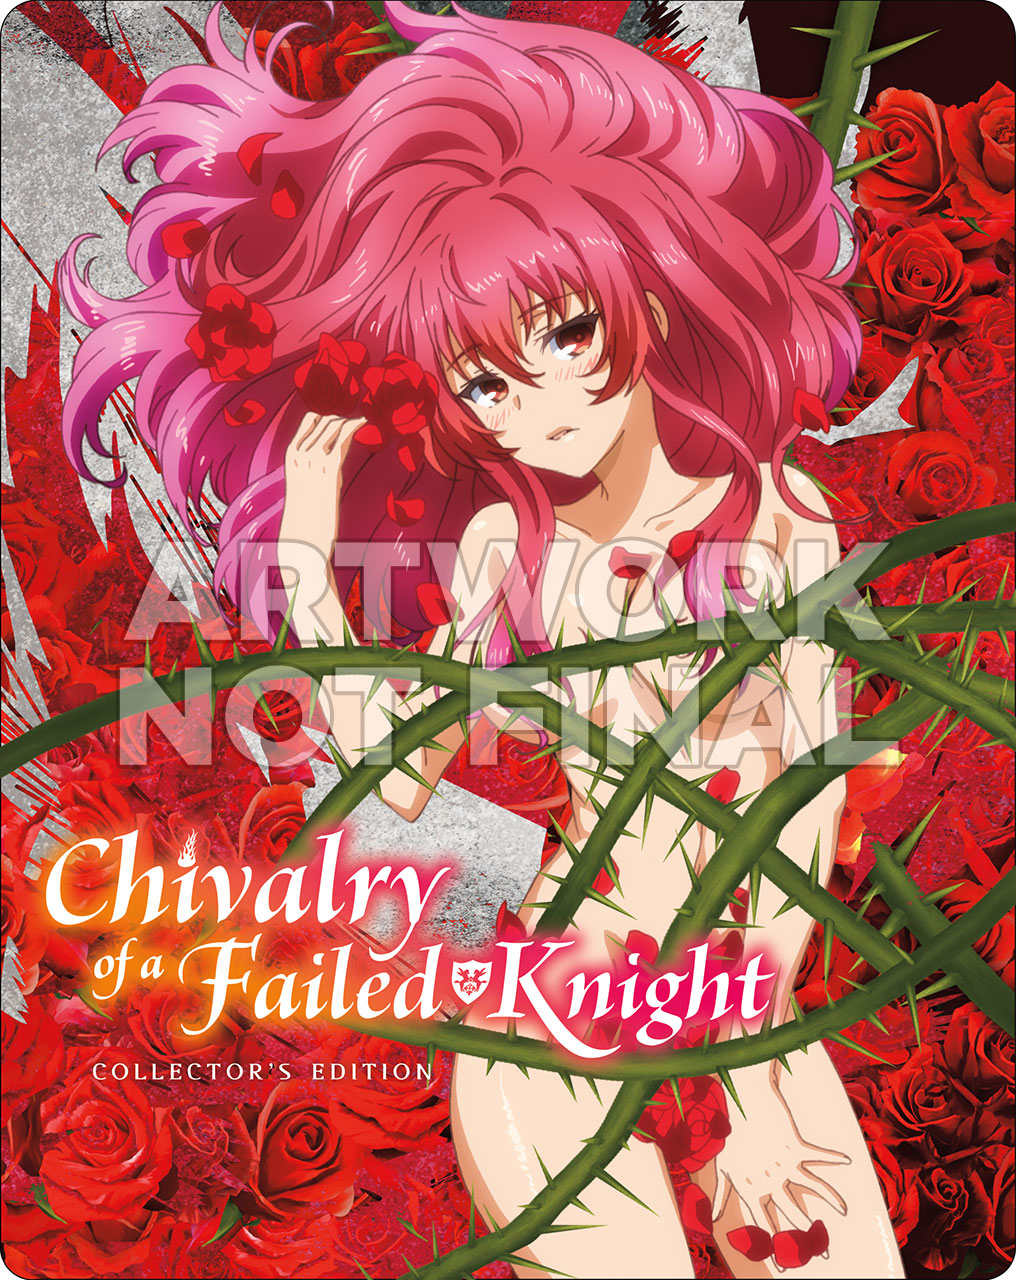 Chivalry of a Failed Knight Series Reaches 1 Million Print Run -  Crunchyroll News